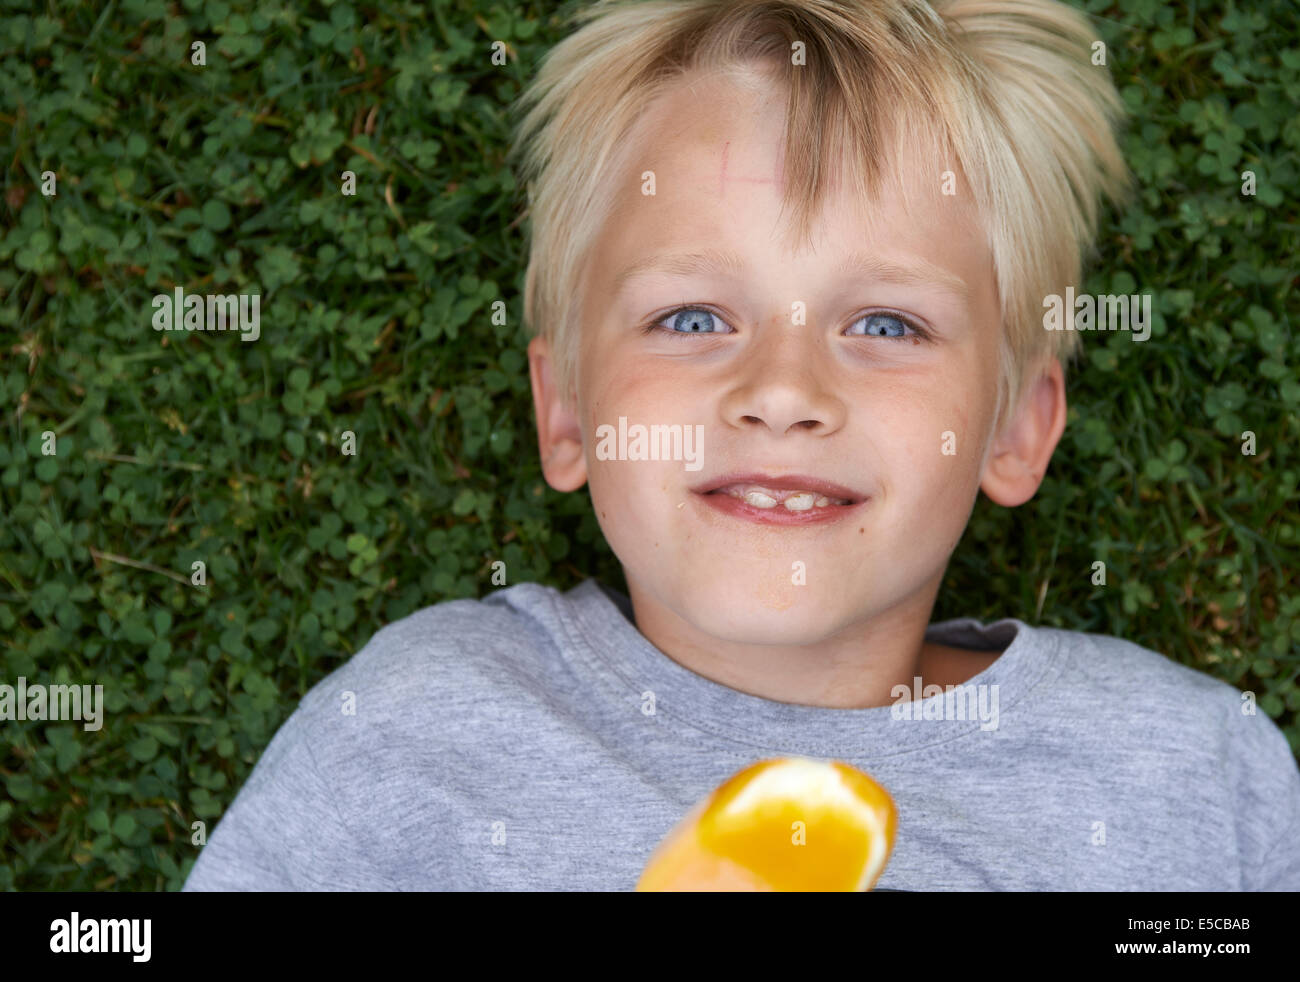 8 anni ragazzo immagini e fotografie stock ad alta risoluzione - Alamy